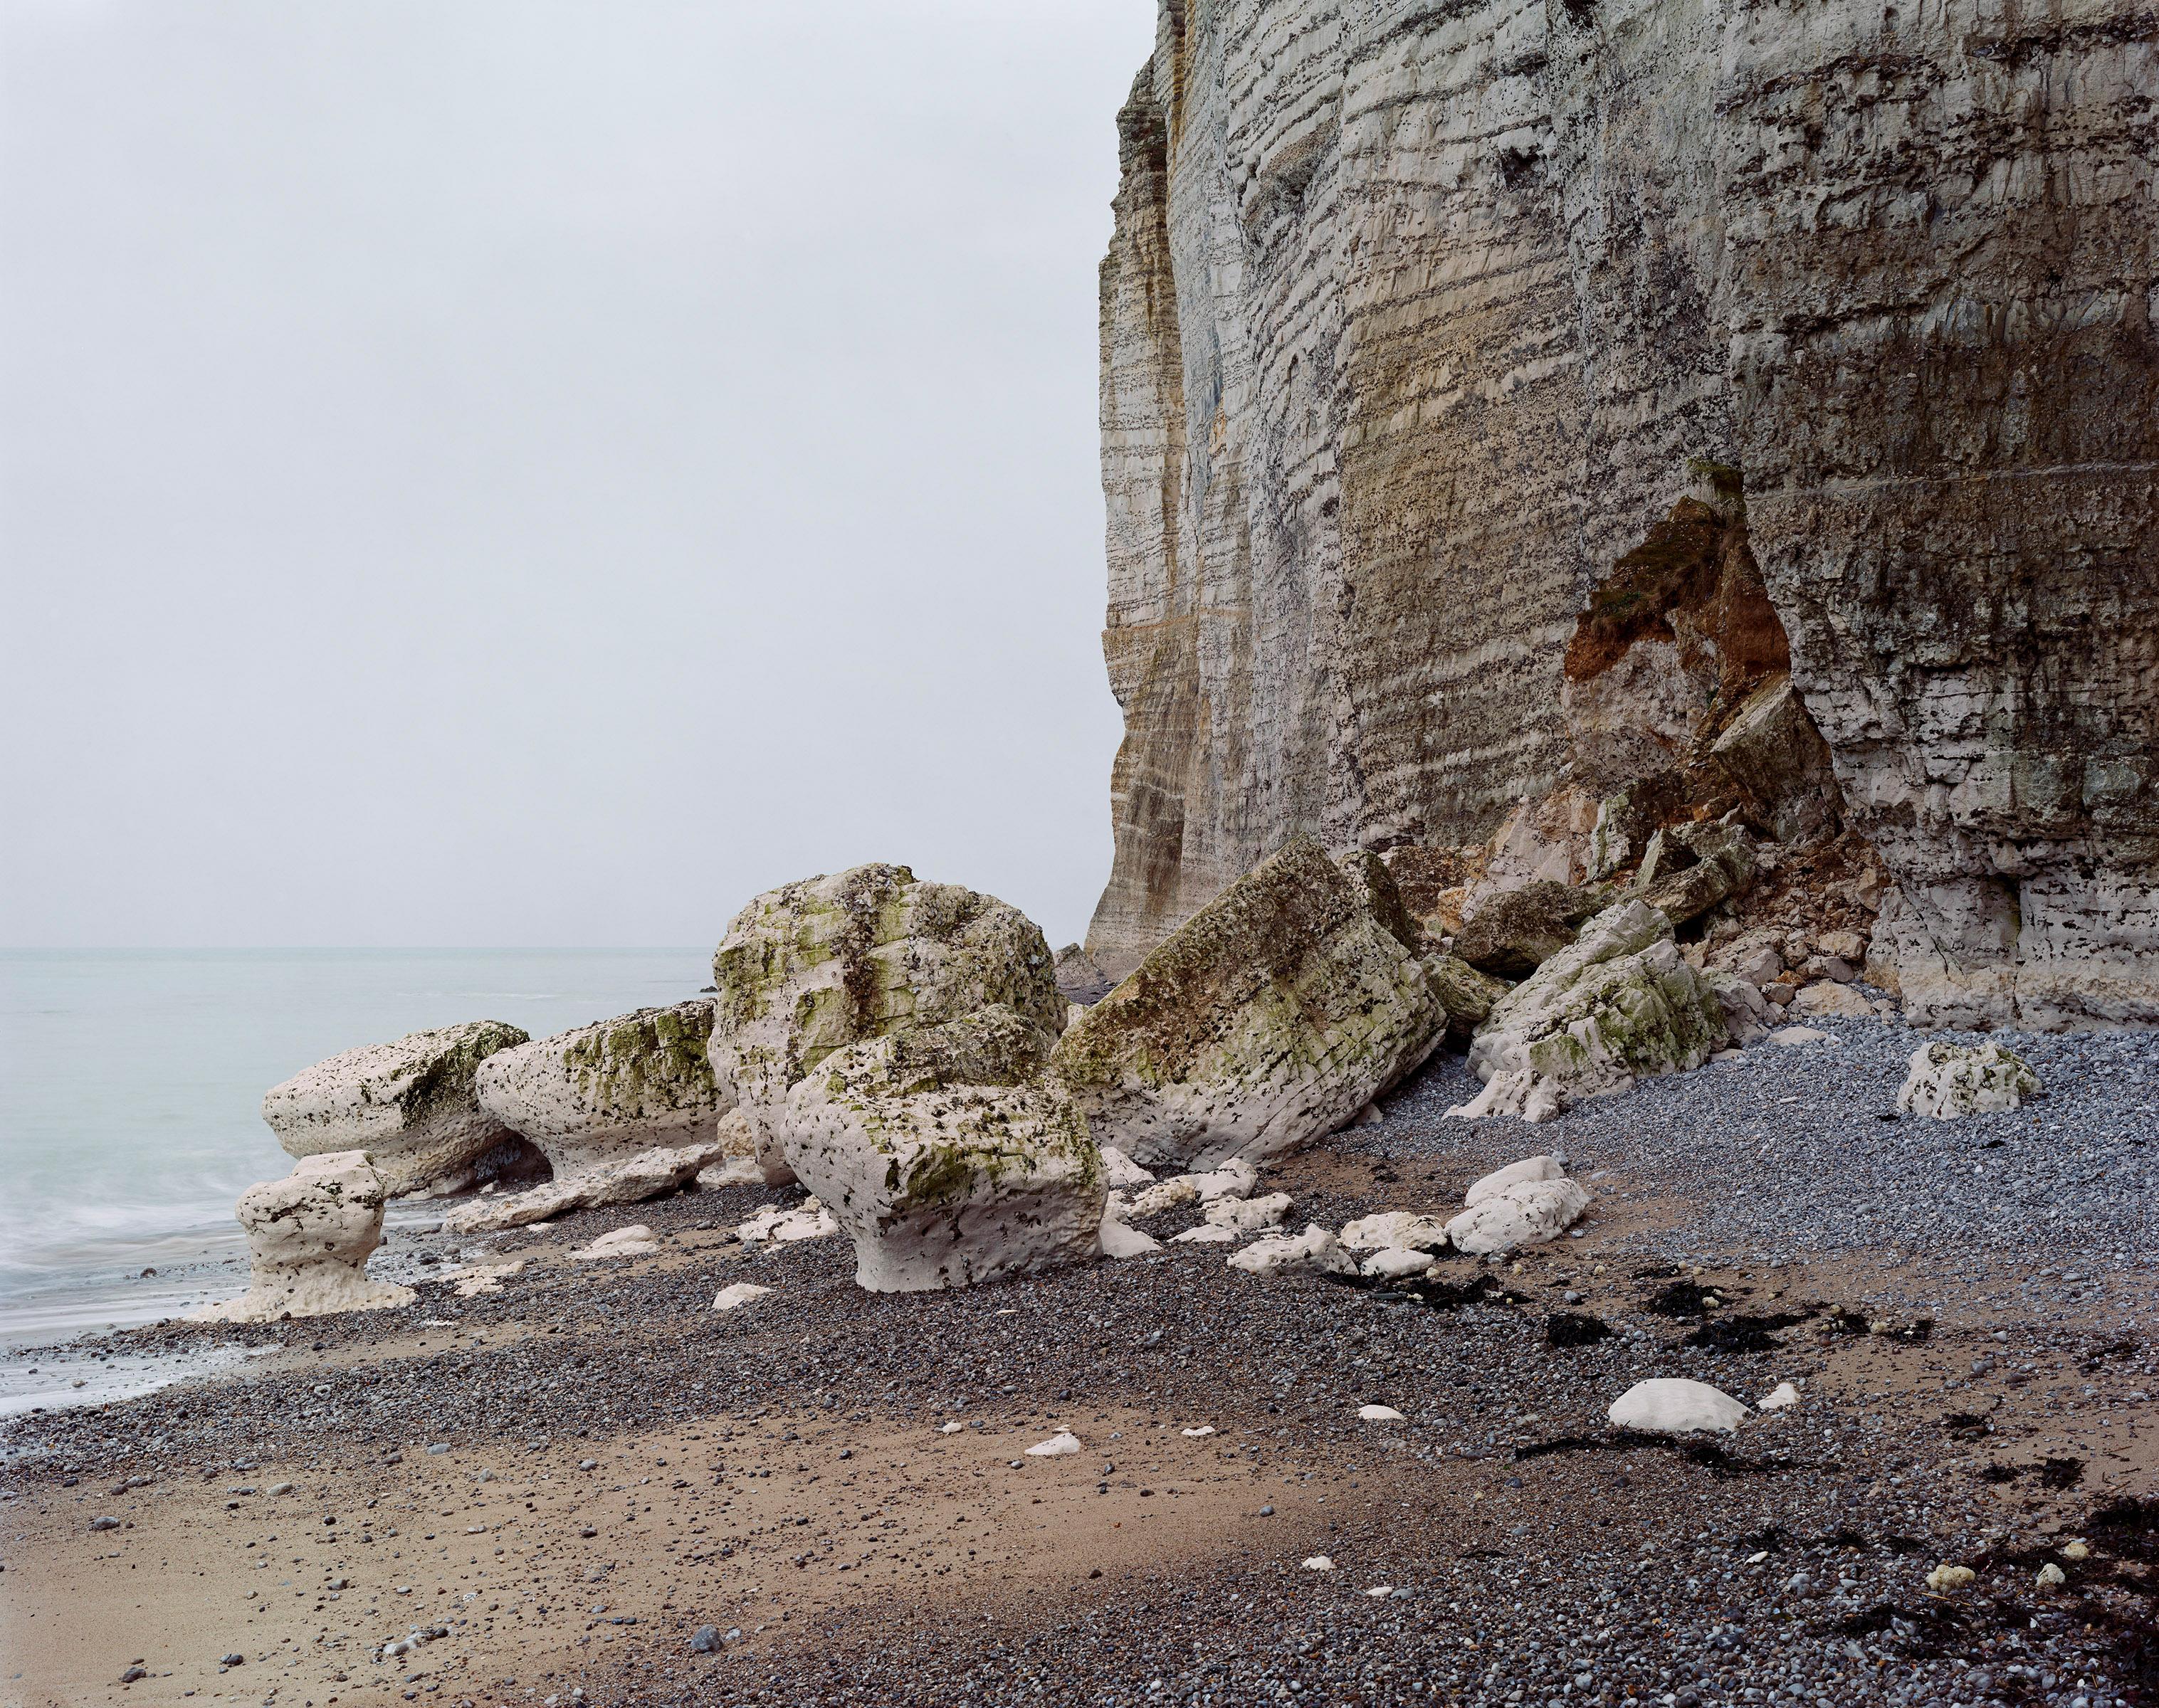 Signé, daté et numéroté au dos
Impression à jet d'encre
46 1/2 x 55 1/2 inches / 118 x 141 cm
Edition de 6 + 2 APs

Jem Southam (né en 1950) est l'un des photographes de paysages britanniques les plus respectés par la critique. Célébré pour son